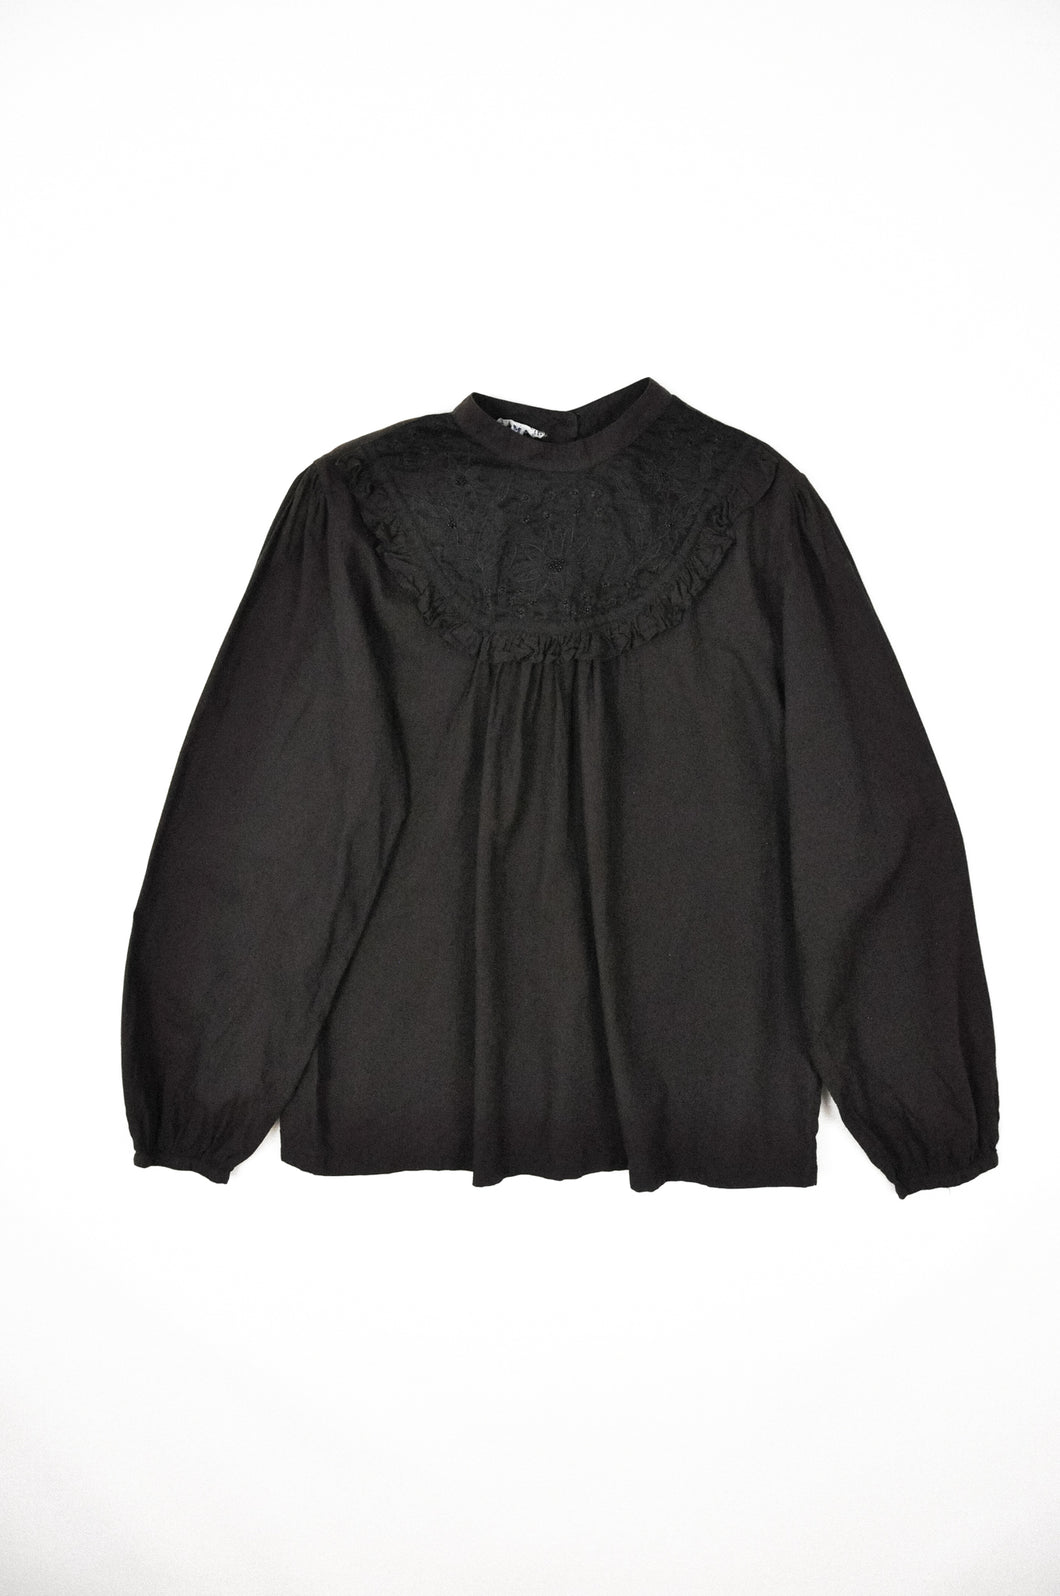 Vintage Victorian Cotton Blouse | Size XS/S